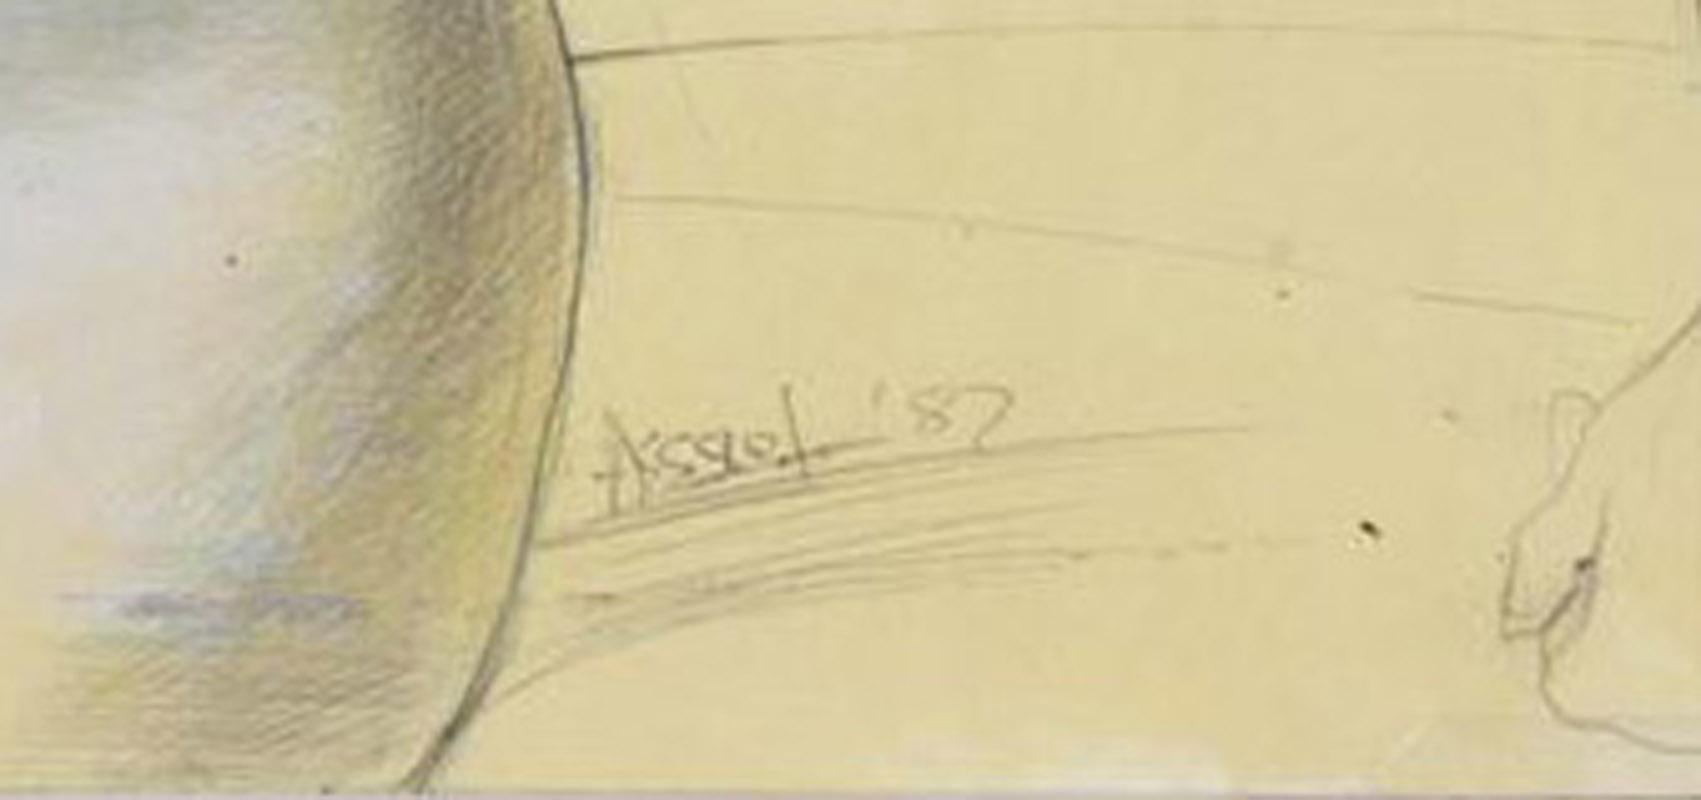 Ohne Titel (Weiblicher Akt)
Graphit und Sgrafitto auf gelbem Papier, 1987
Signiert unten rechts
Hinweis: Steven Assael wird von der Forum Gallery in New York vertreten.  Im Jahr 1977 wurde er mit dem Charles Romans Award der National Academy of